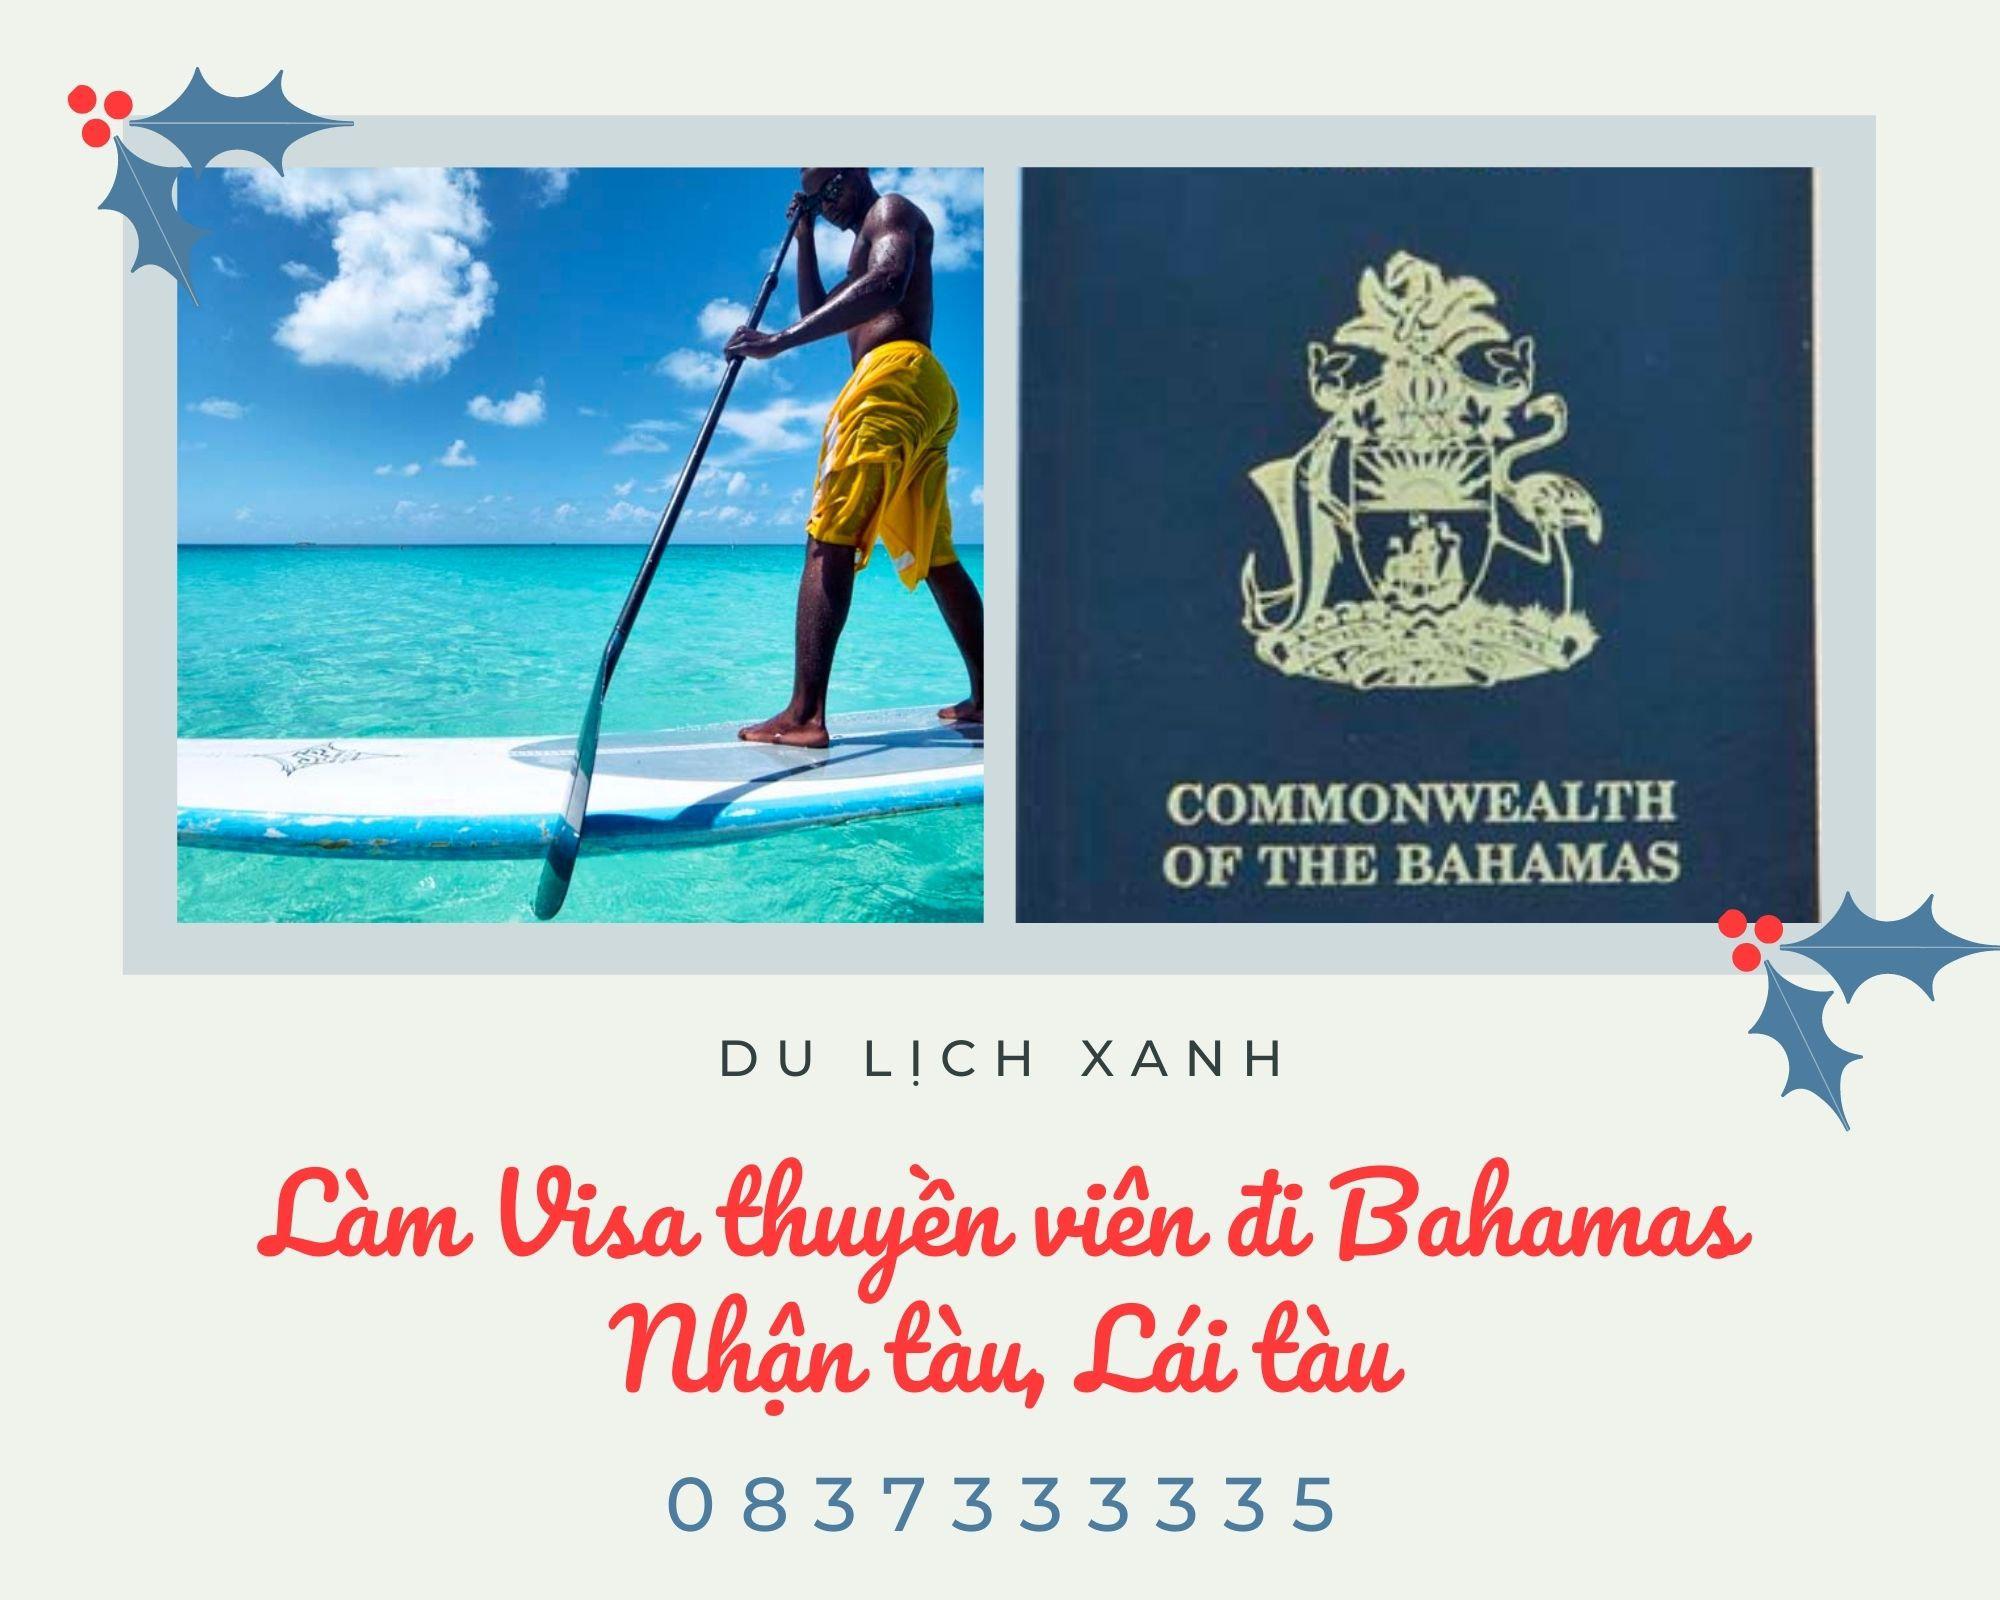 Dịch vụ Visa thuyền viên đi Bahamas: Nhận tàu, Lái tàu